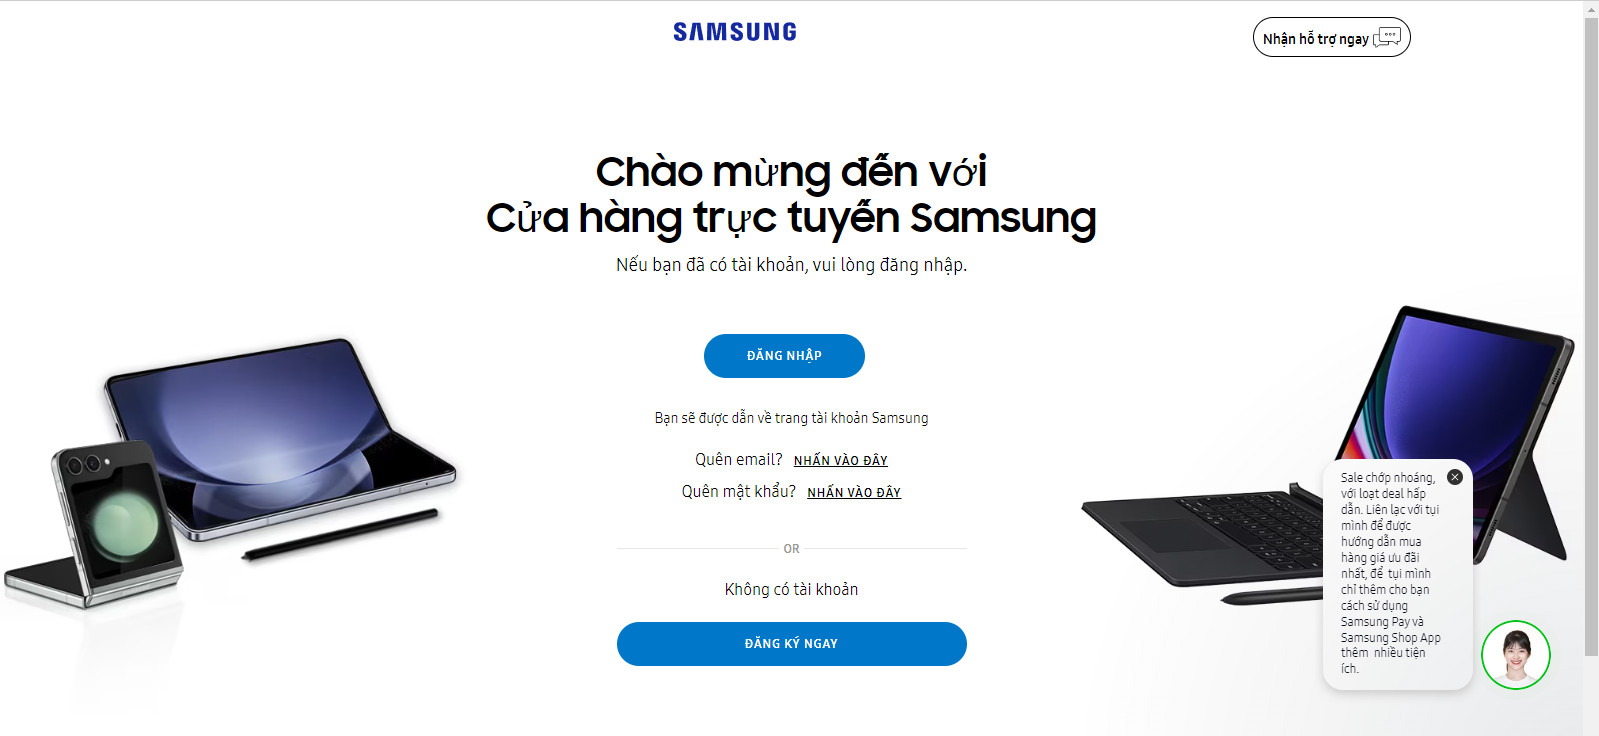 Trải nghiệm tồi tệ với cách xử lý khiếu nại của Samsung khi mua online trên web